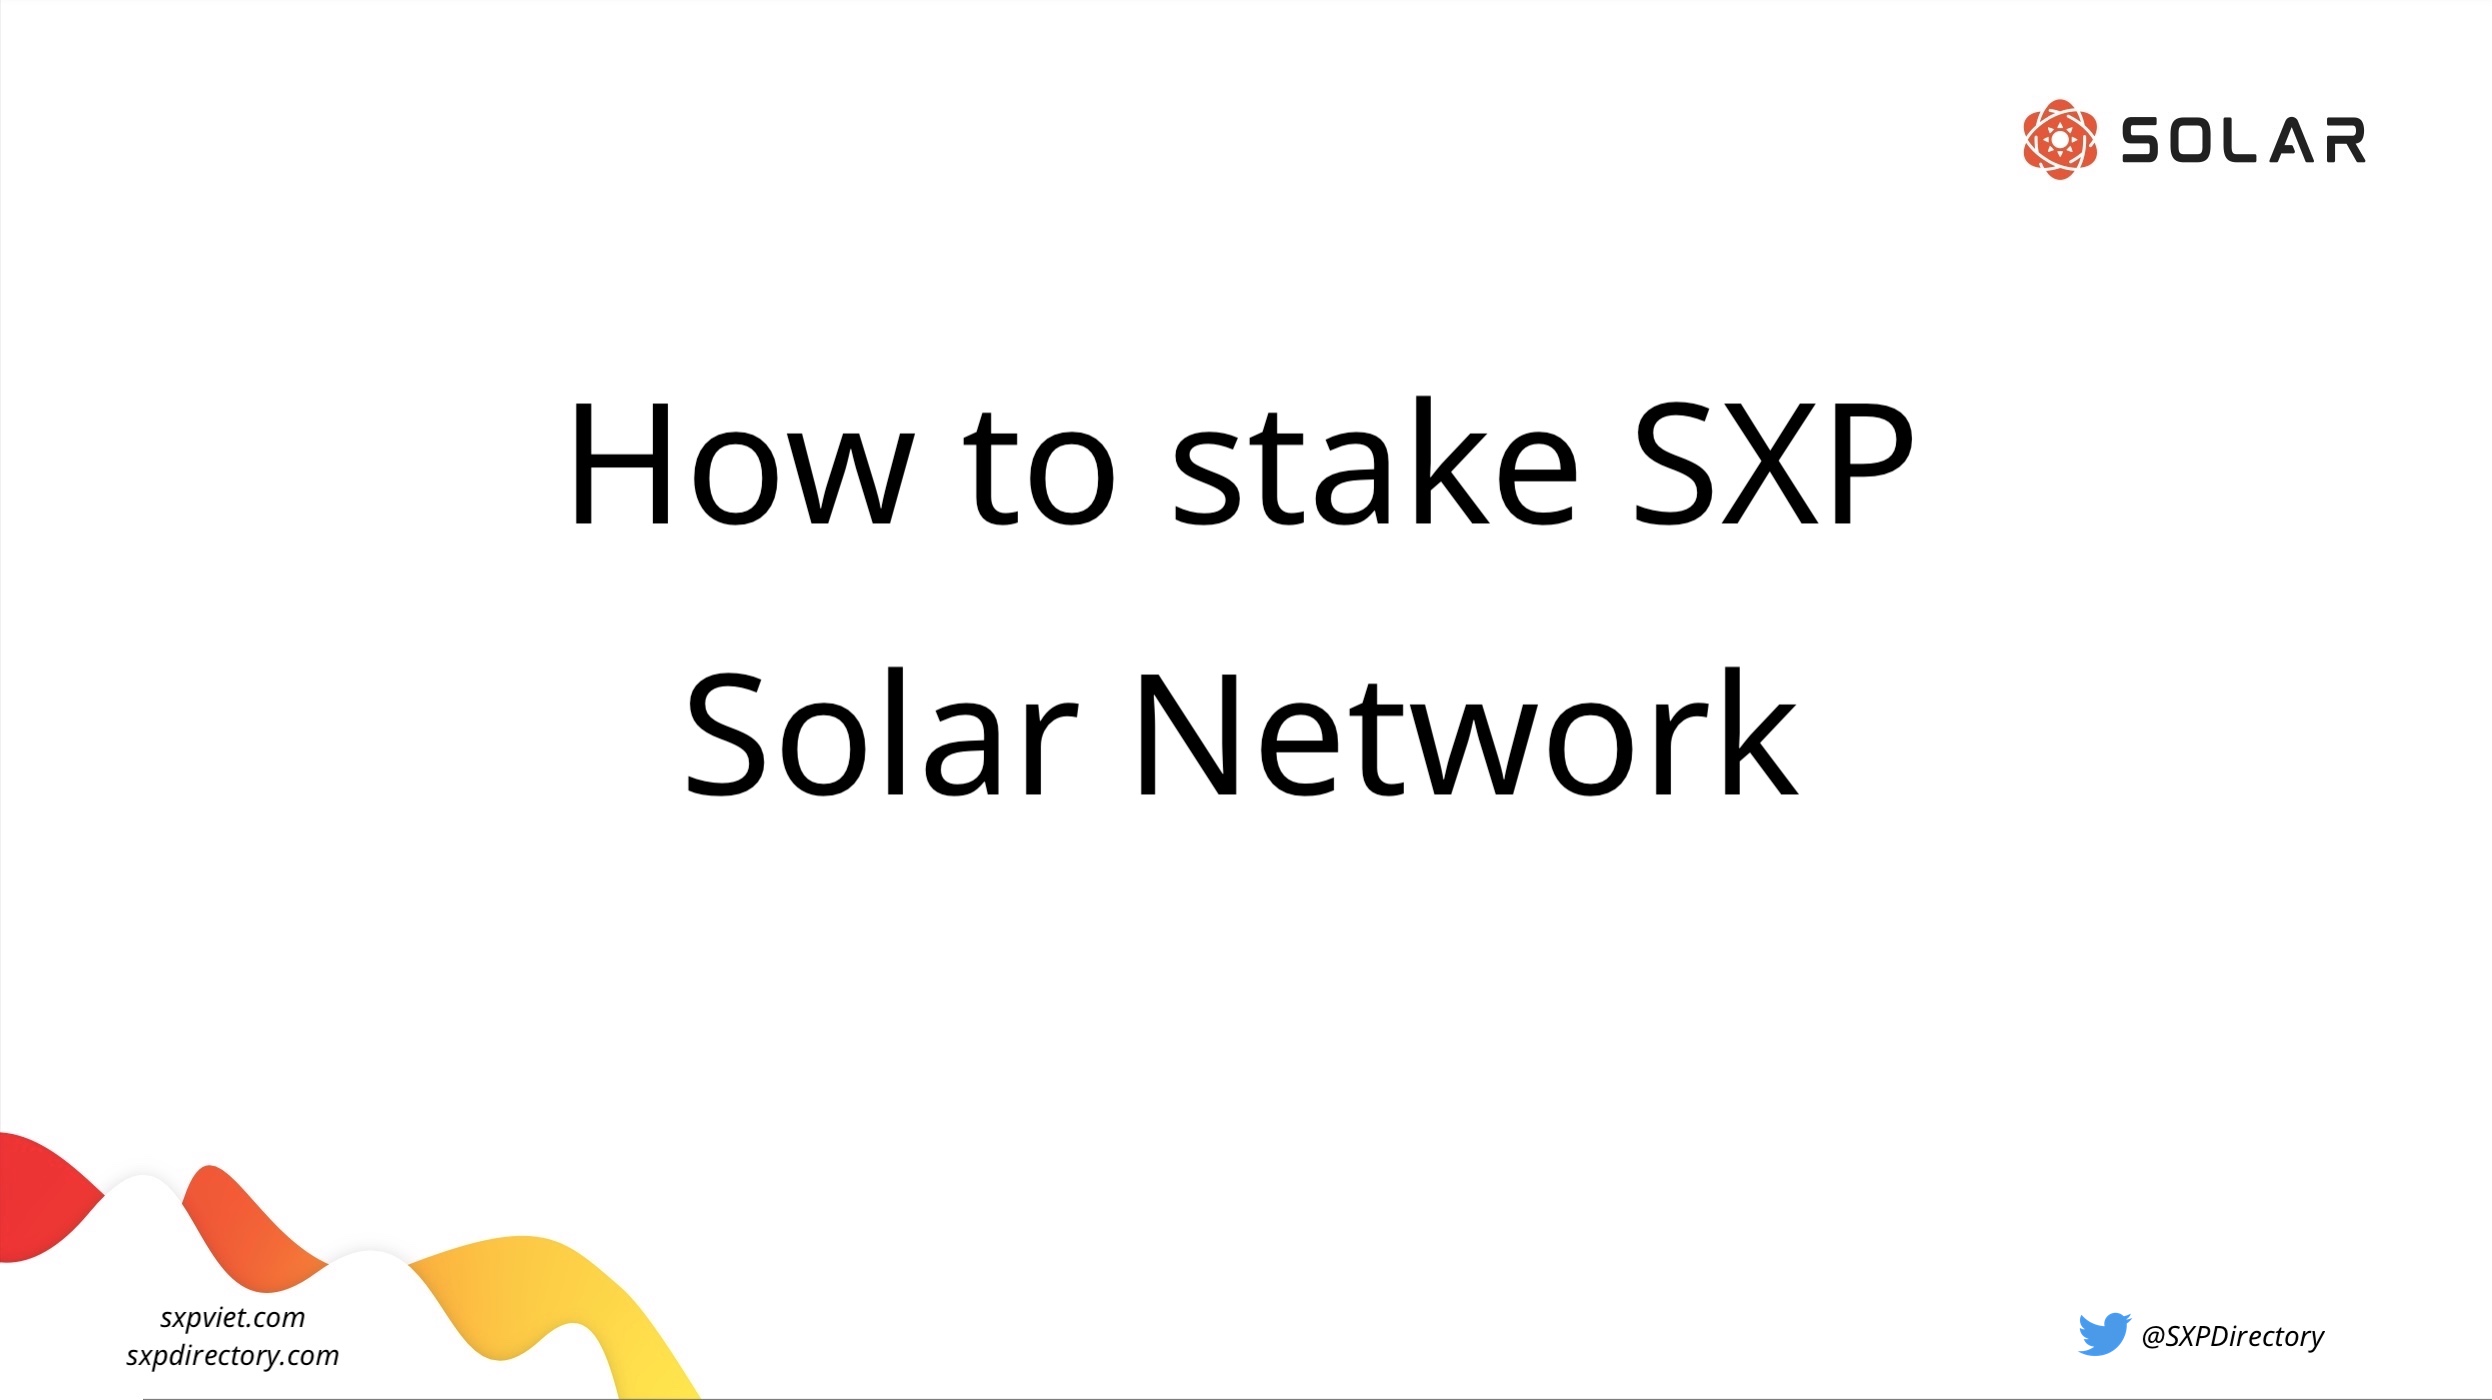 Stake SXP